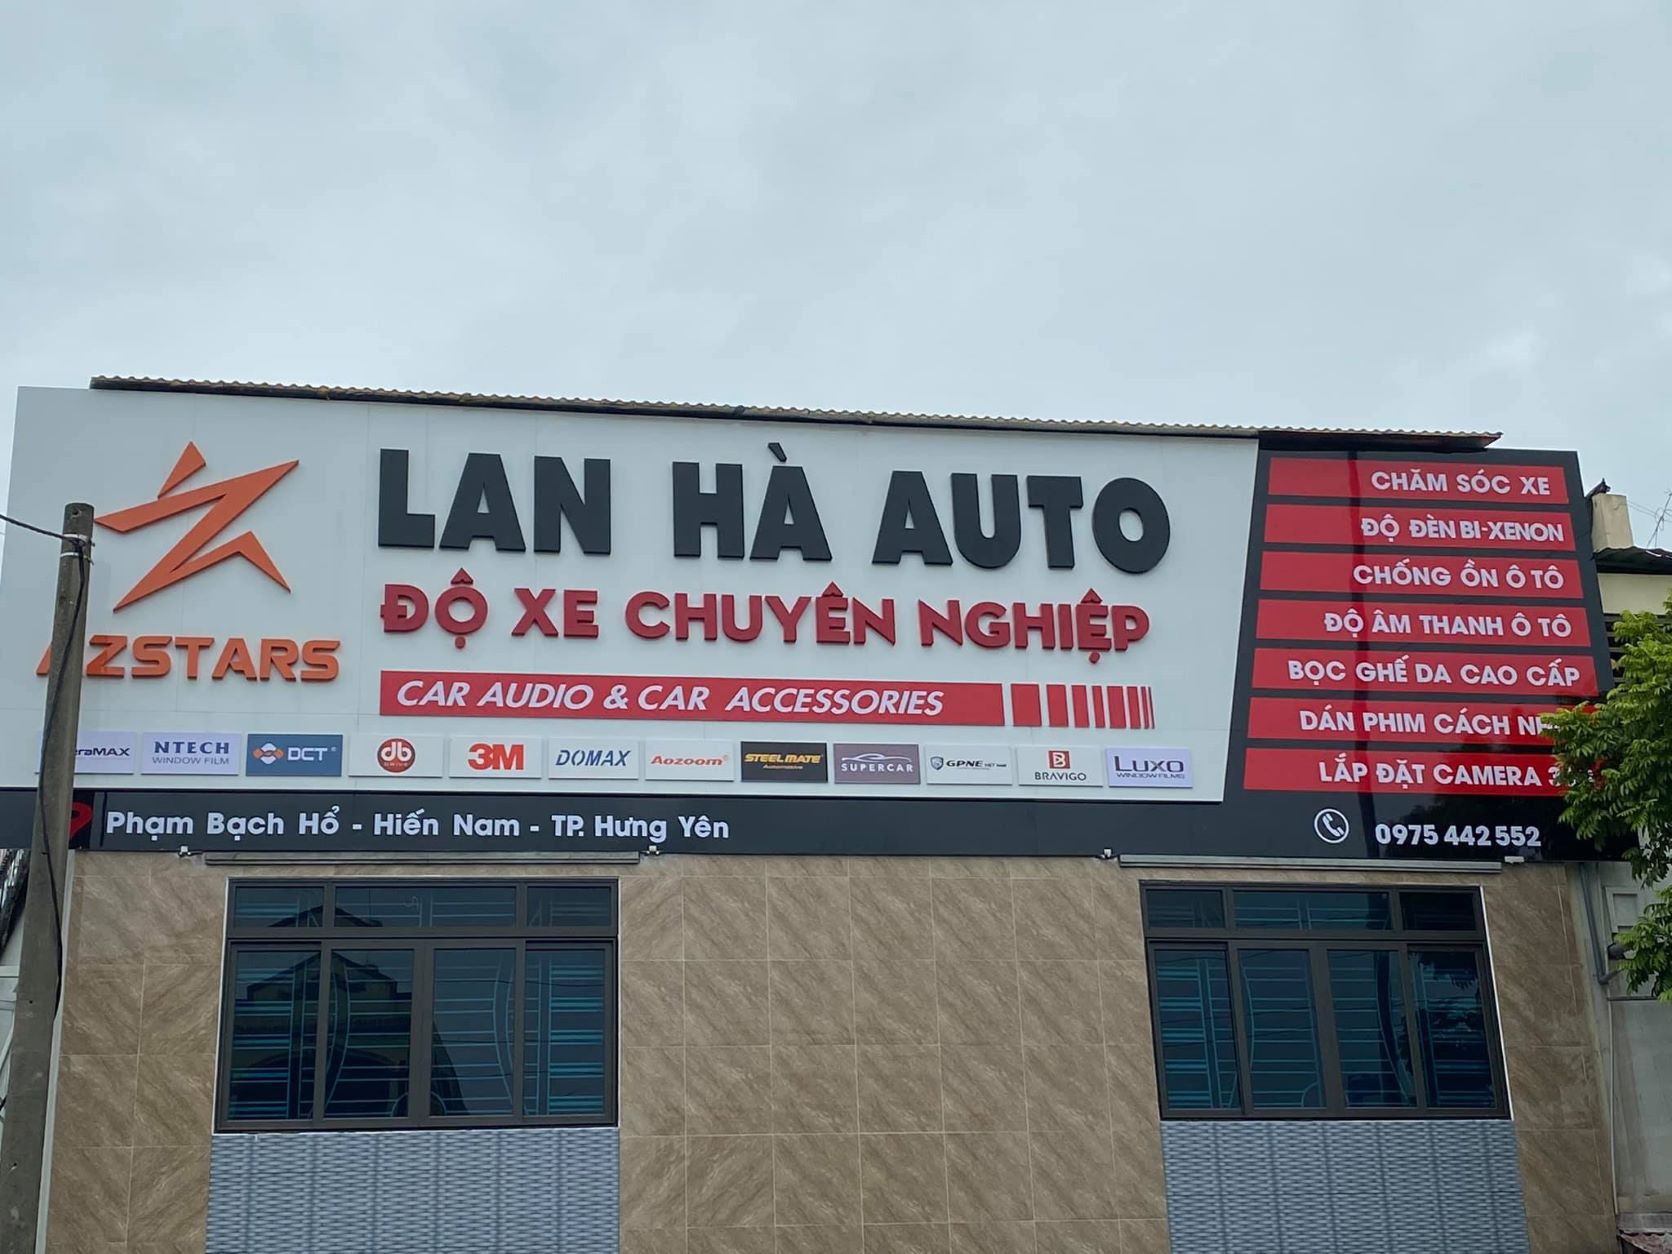  Lan Hà Auto - cơ sở 1